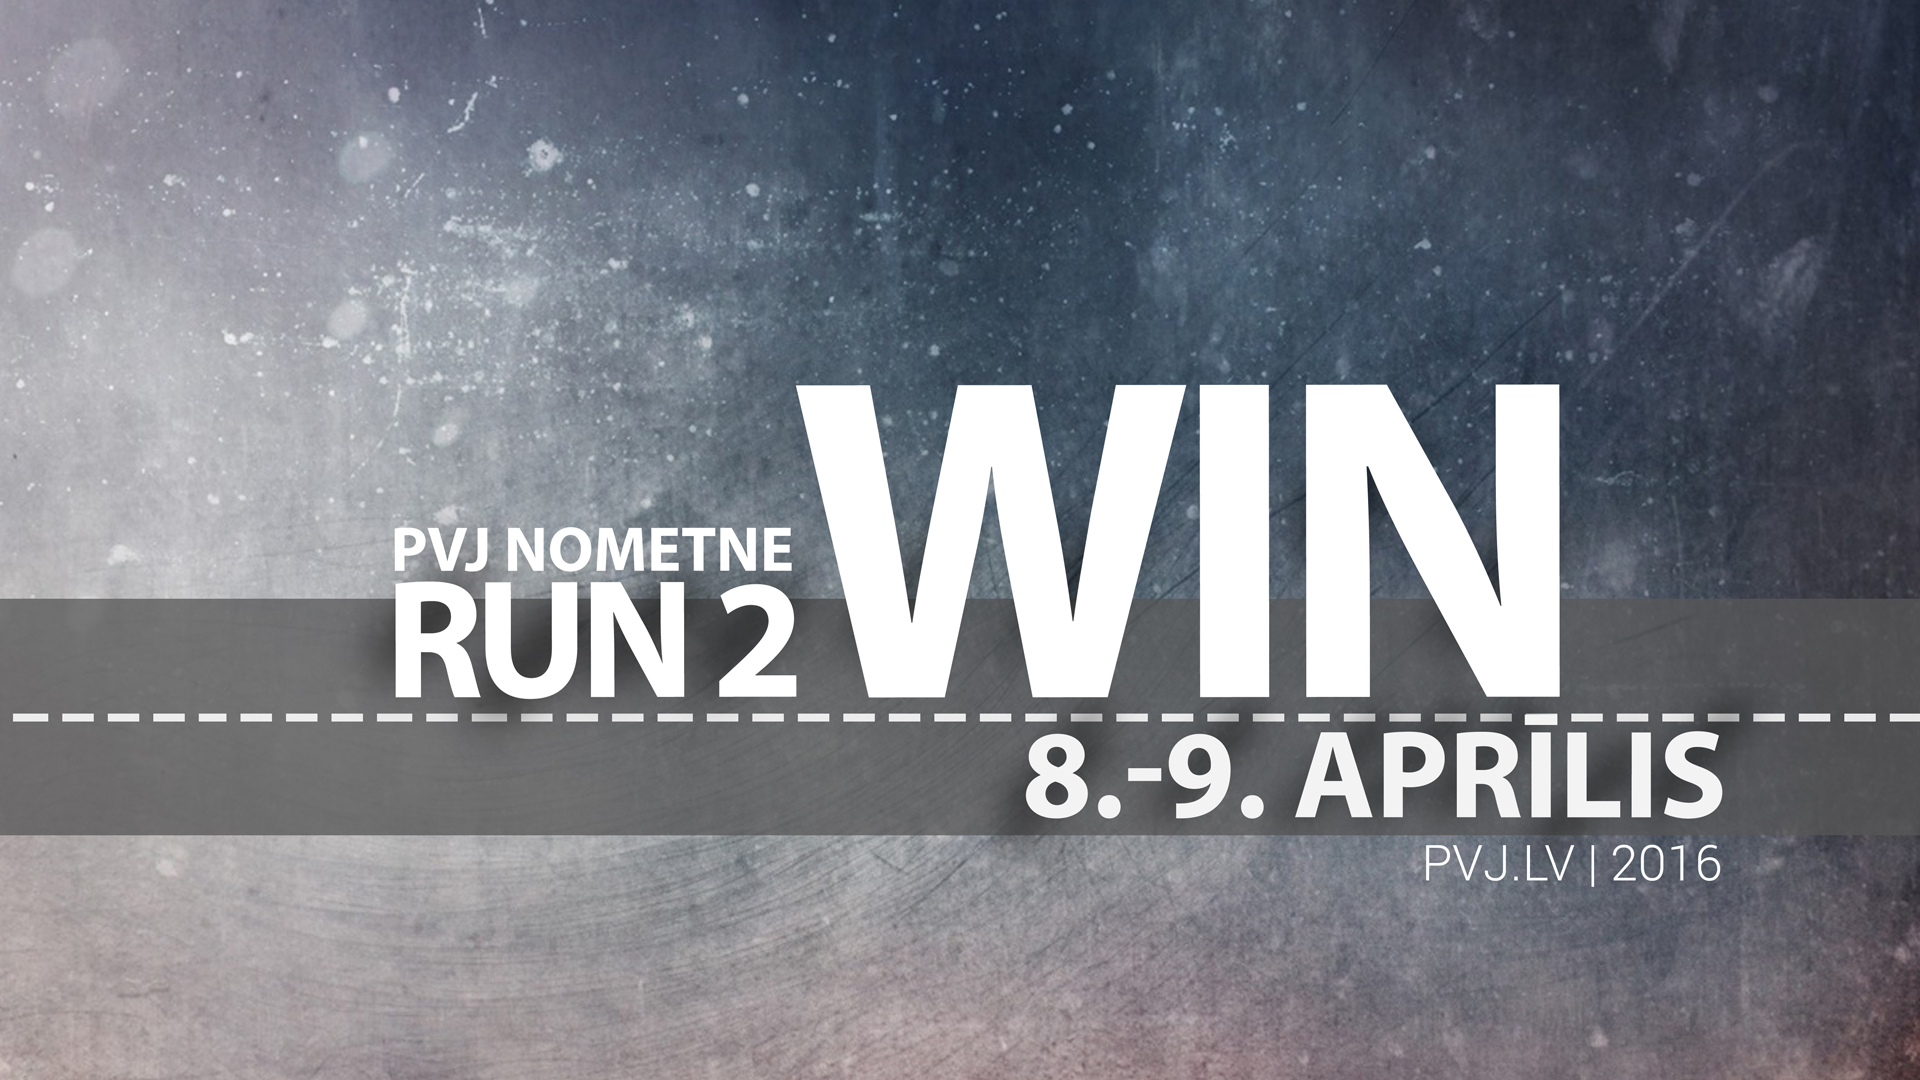 PVJ_run_2_win_